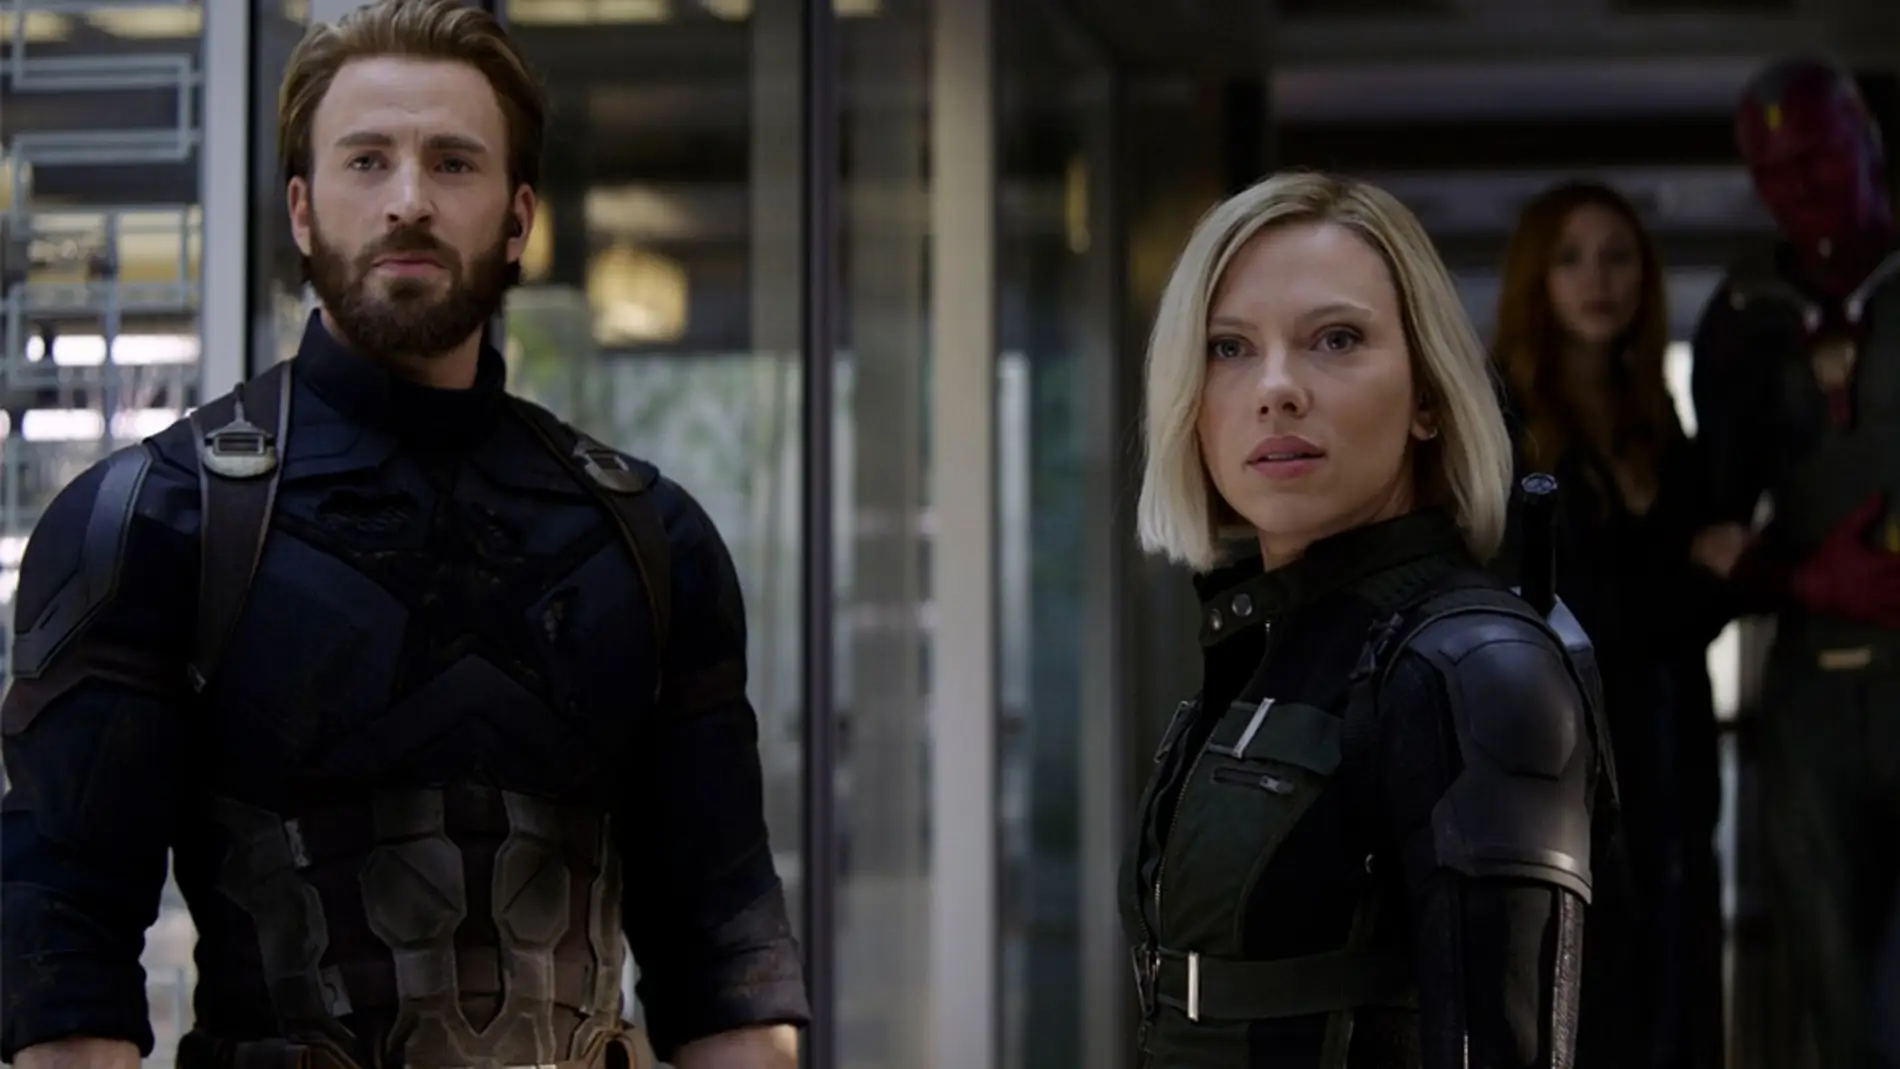 Scarlett Johansson y Chris Evans como Viuda Negra y Capitán América